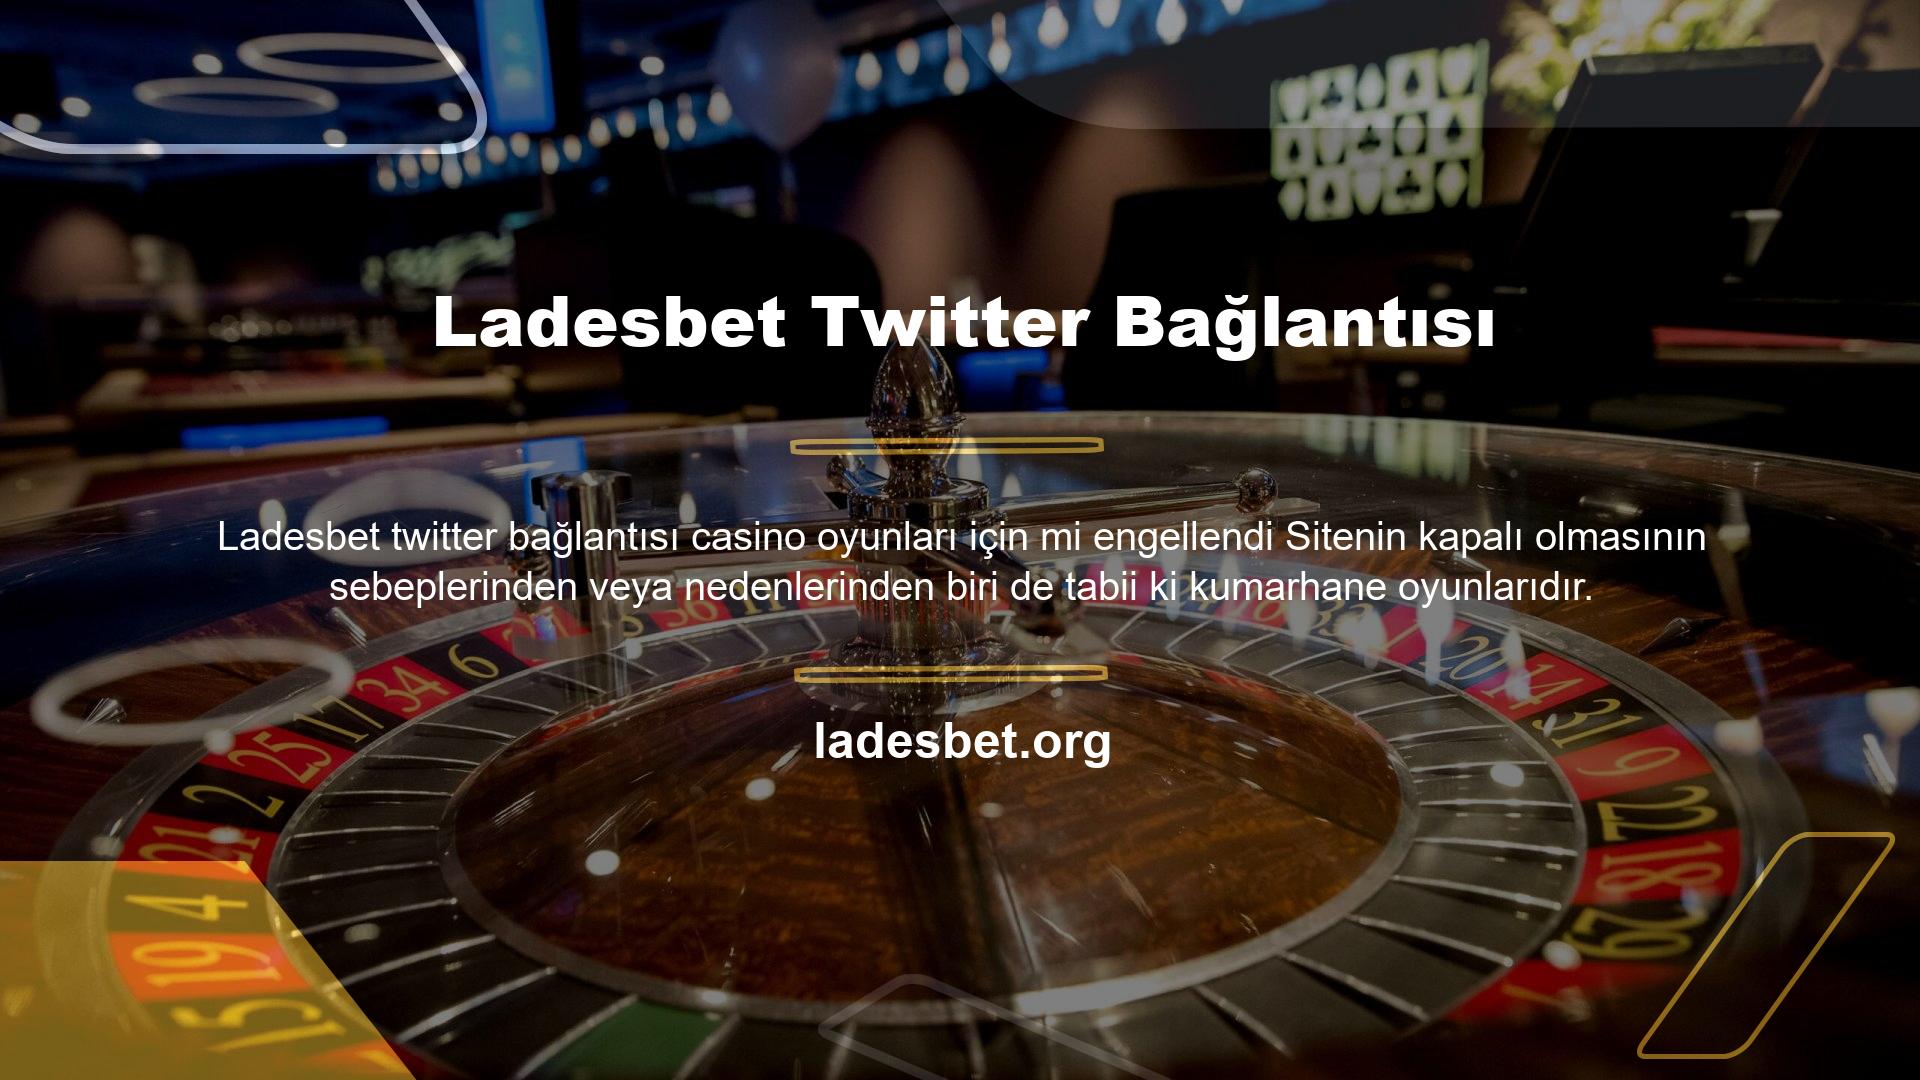 Her neyse, kumarhane oyunları yüzünden Ladesbet Twitter bağlantısı mı kesildi? Sorular bir postacı olarak cevaplanabilir